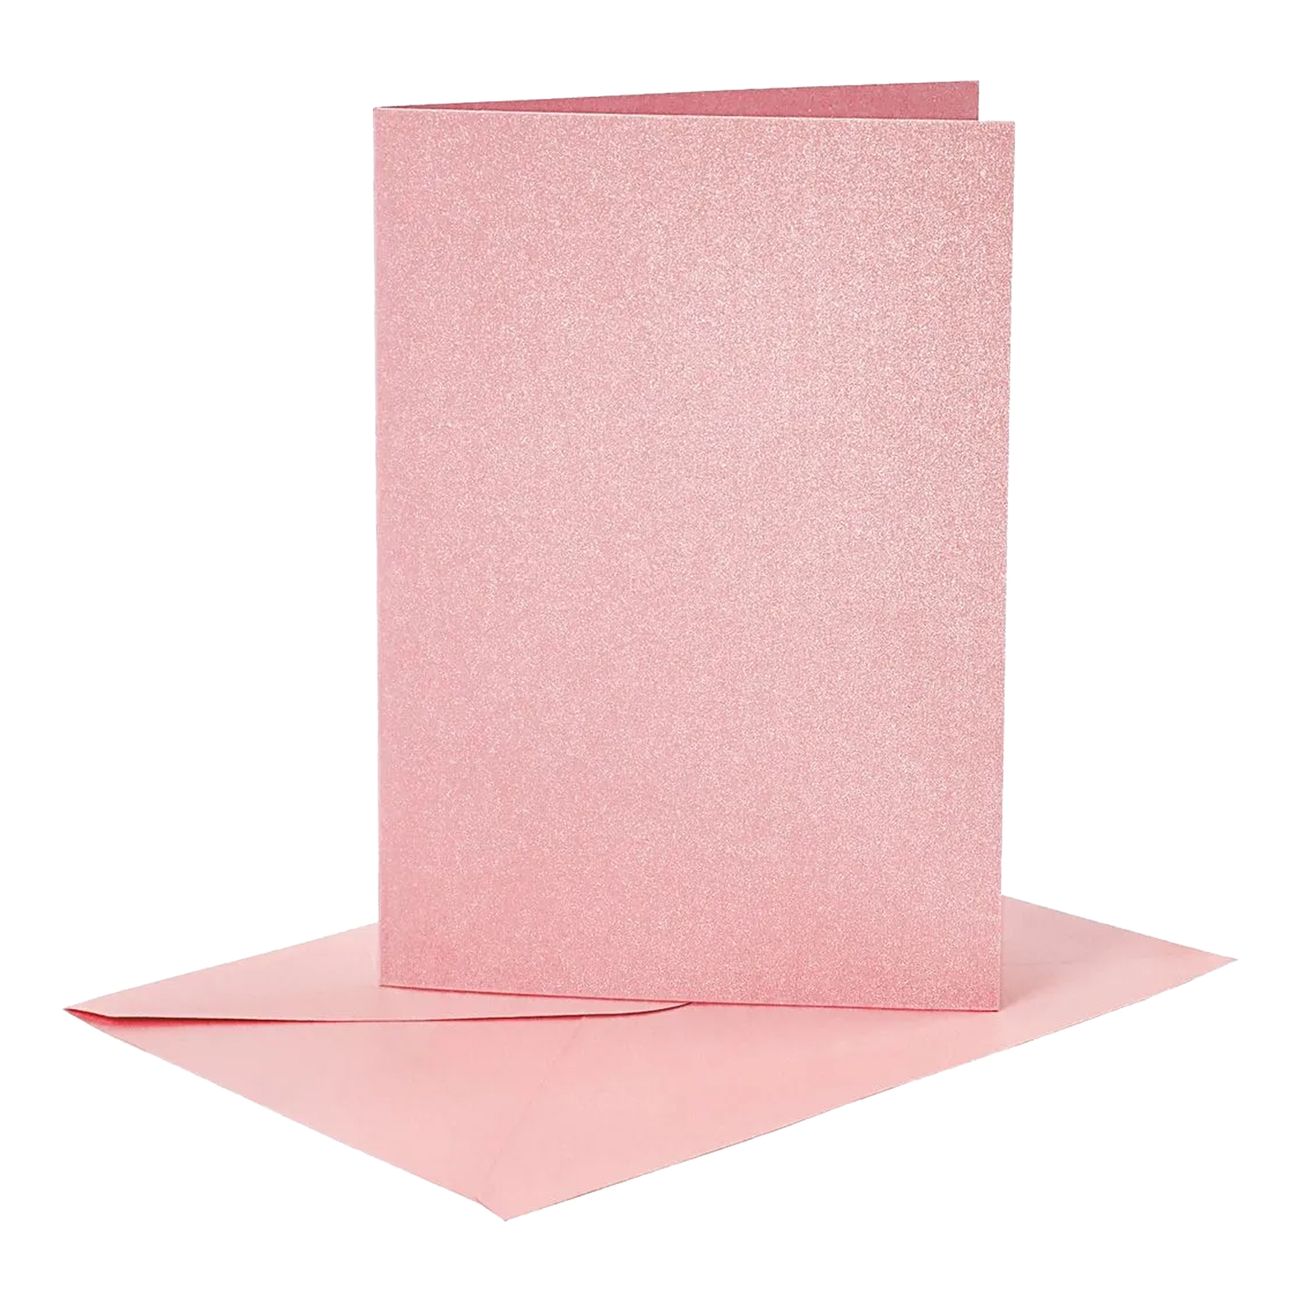 kort-med-kuvert-rosa-glittrigt-86535-1